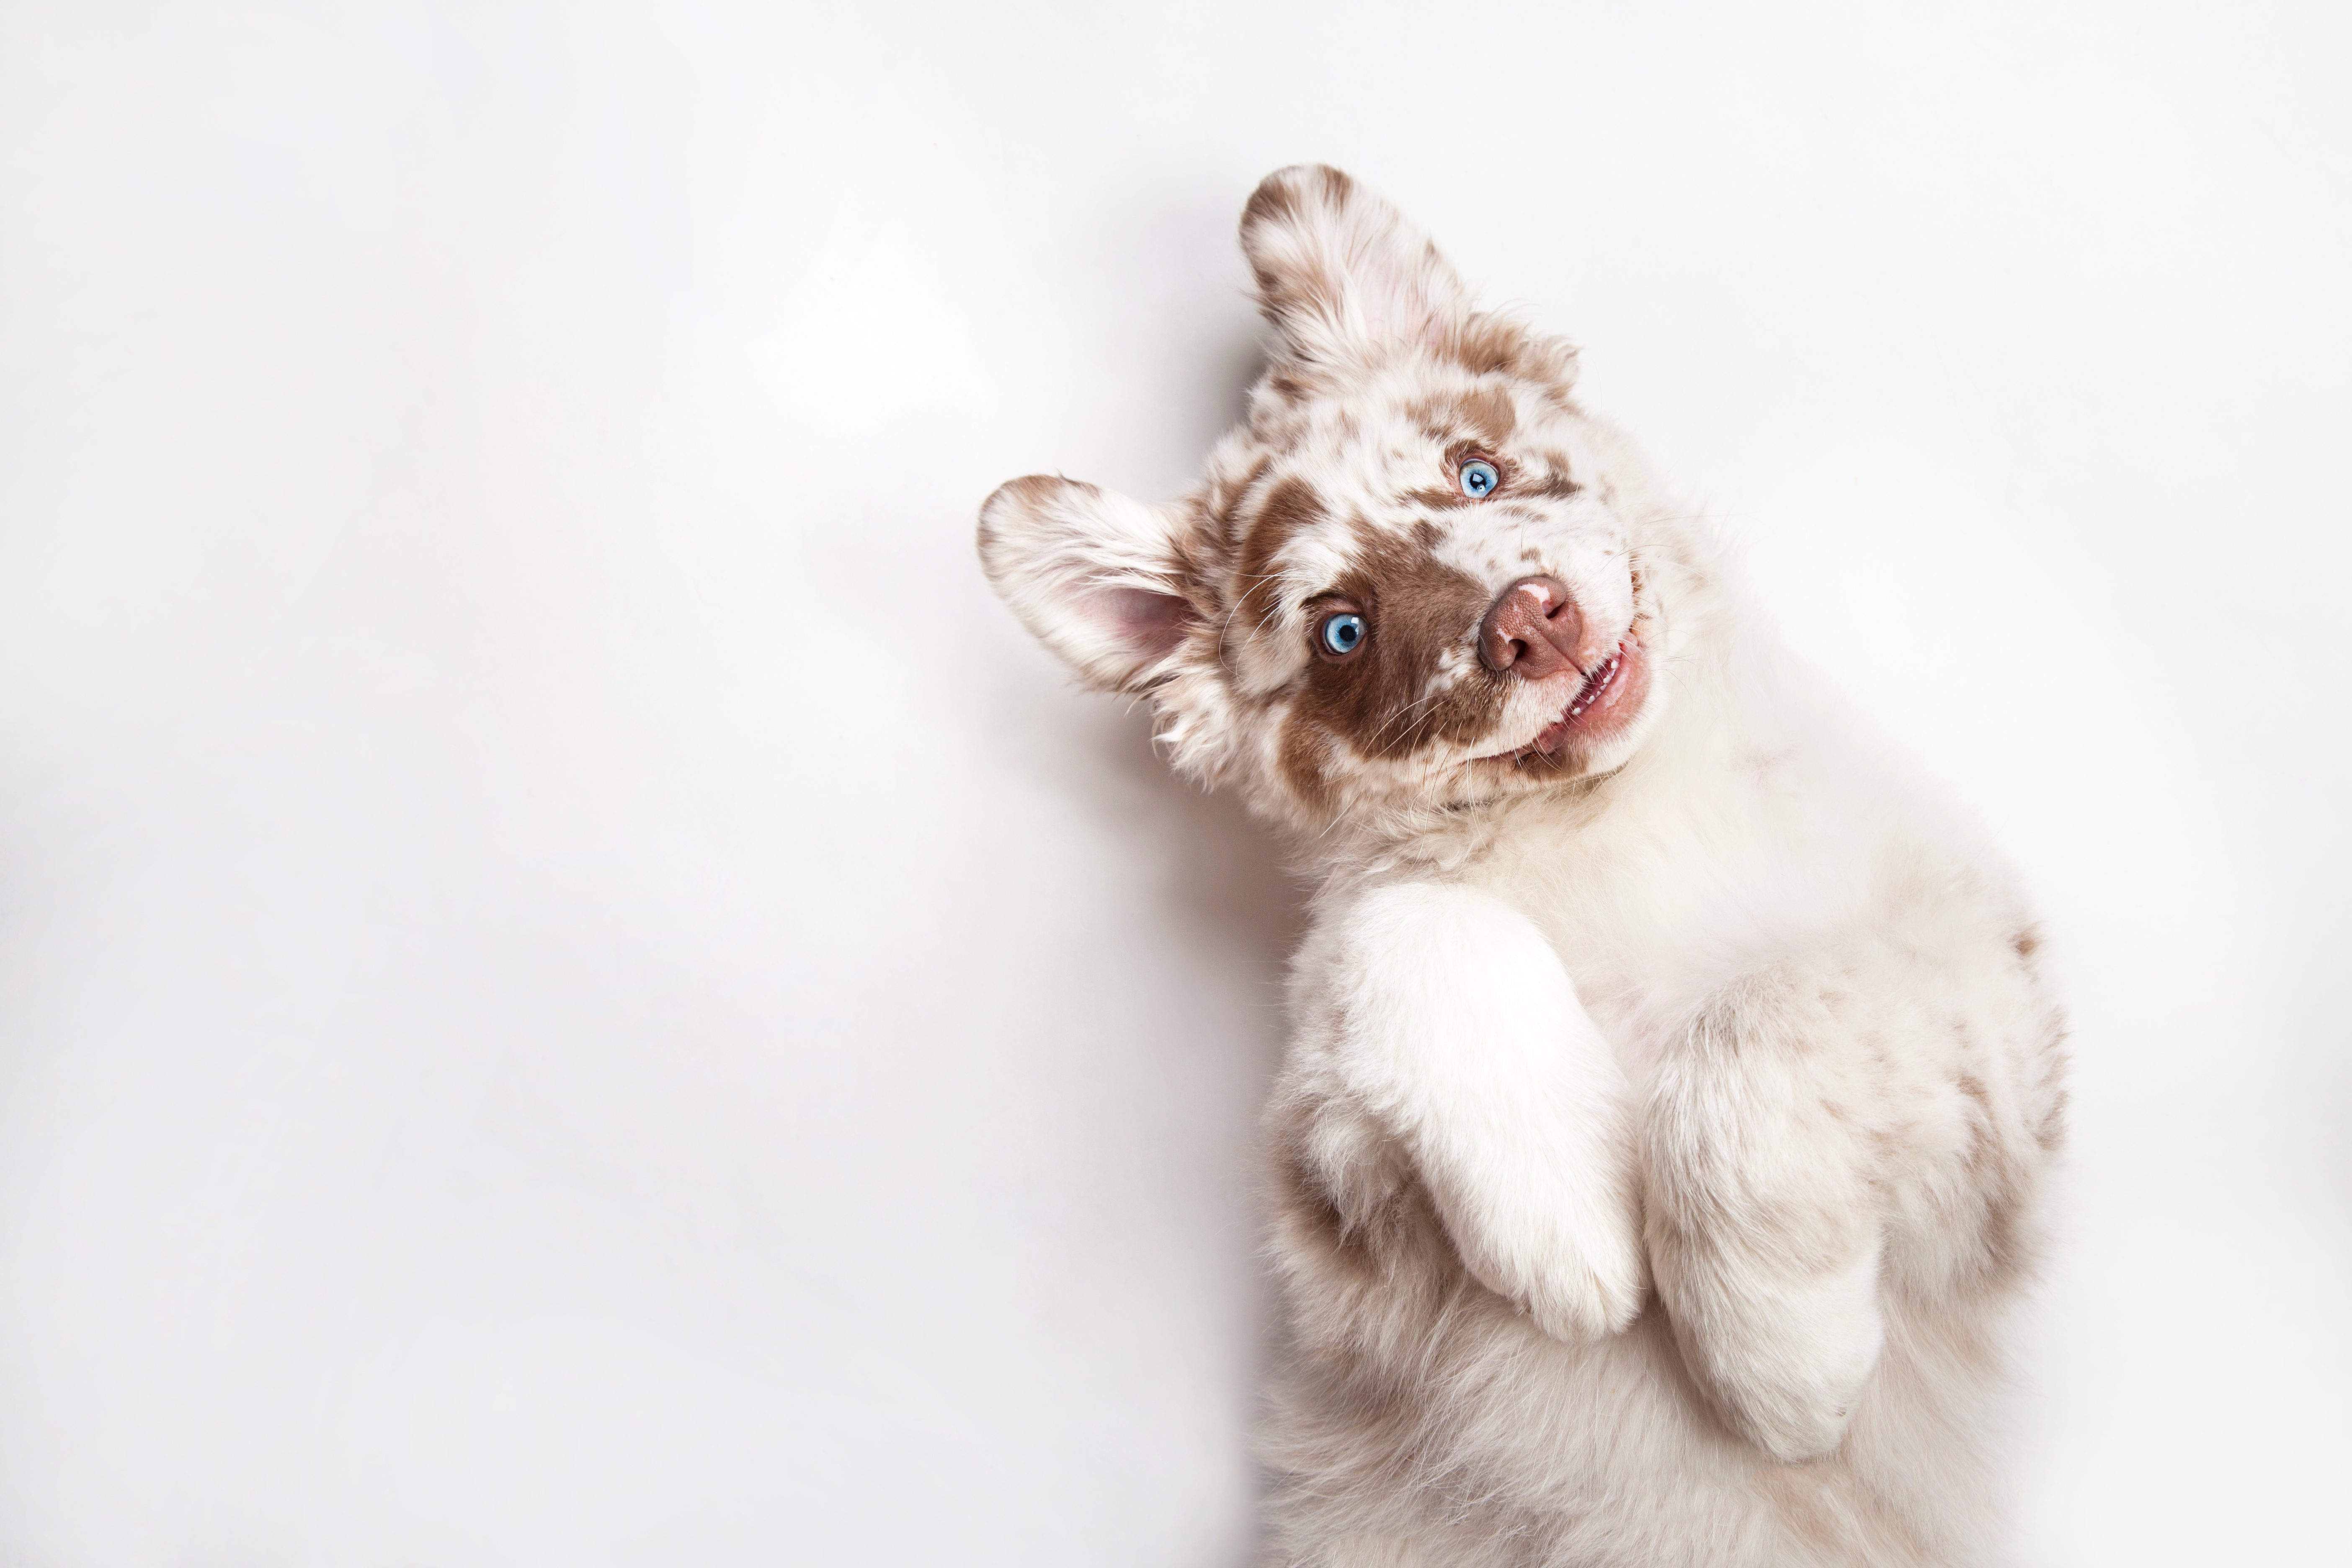 Las características de los perros albinos es la baja pigmentación en ojos, nariz y pelo. (Foto Prensa Libre: Shutterstock)